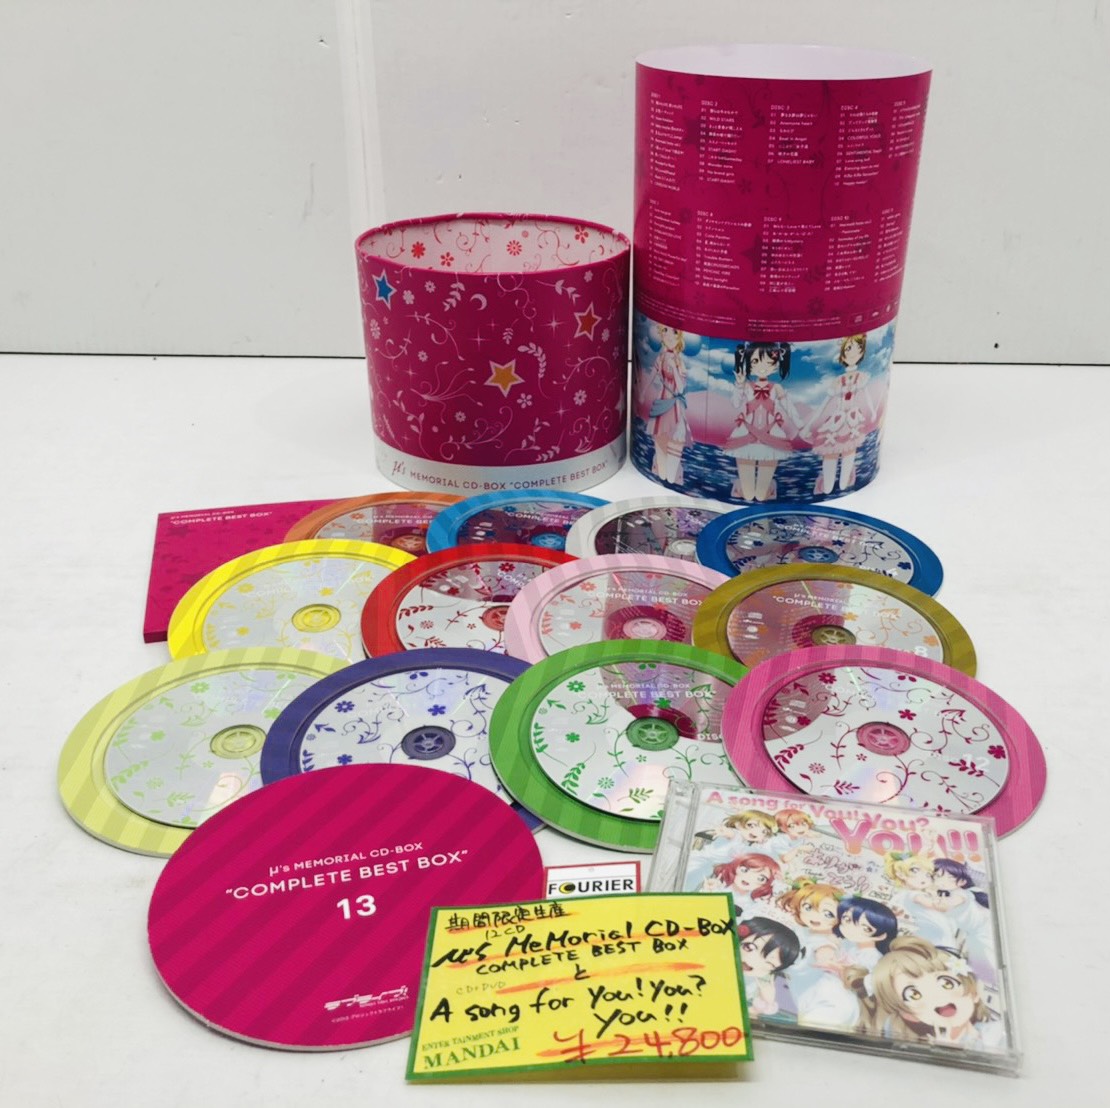 μ'ｓ Memorial CD-BOX「Complete BEST BOX」 bjsgroup.com